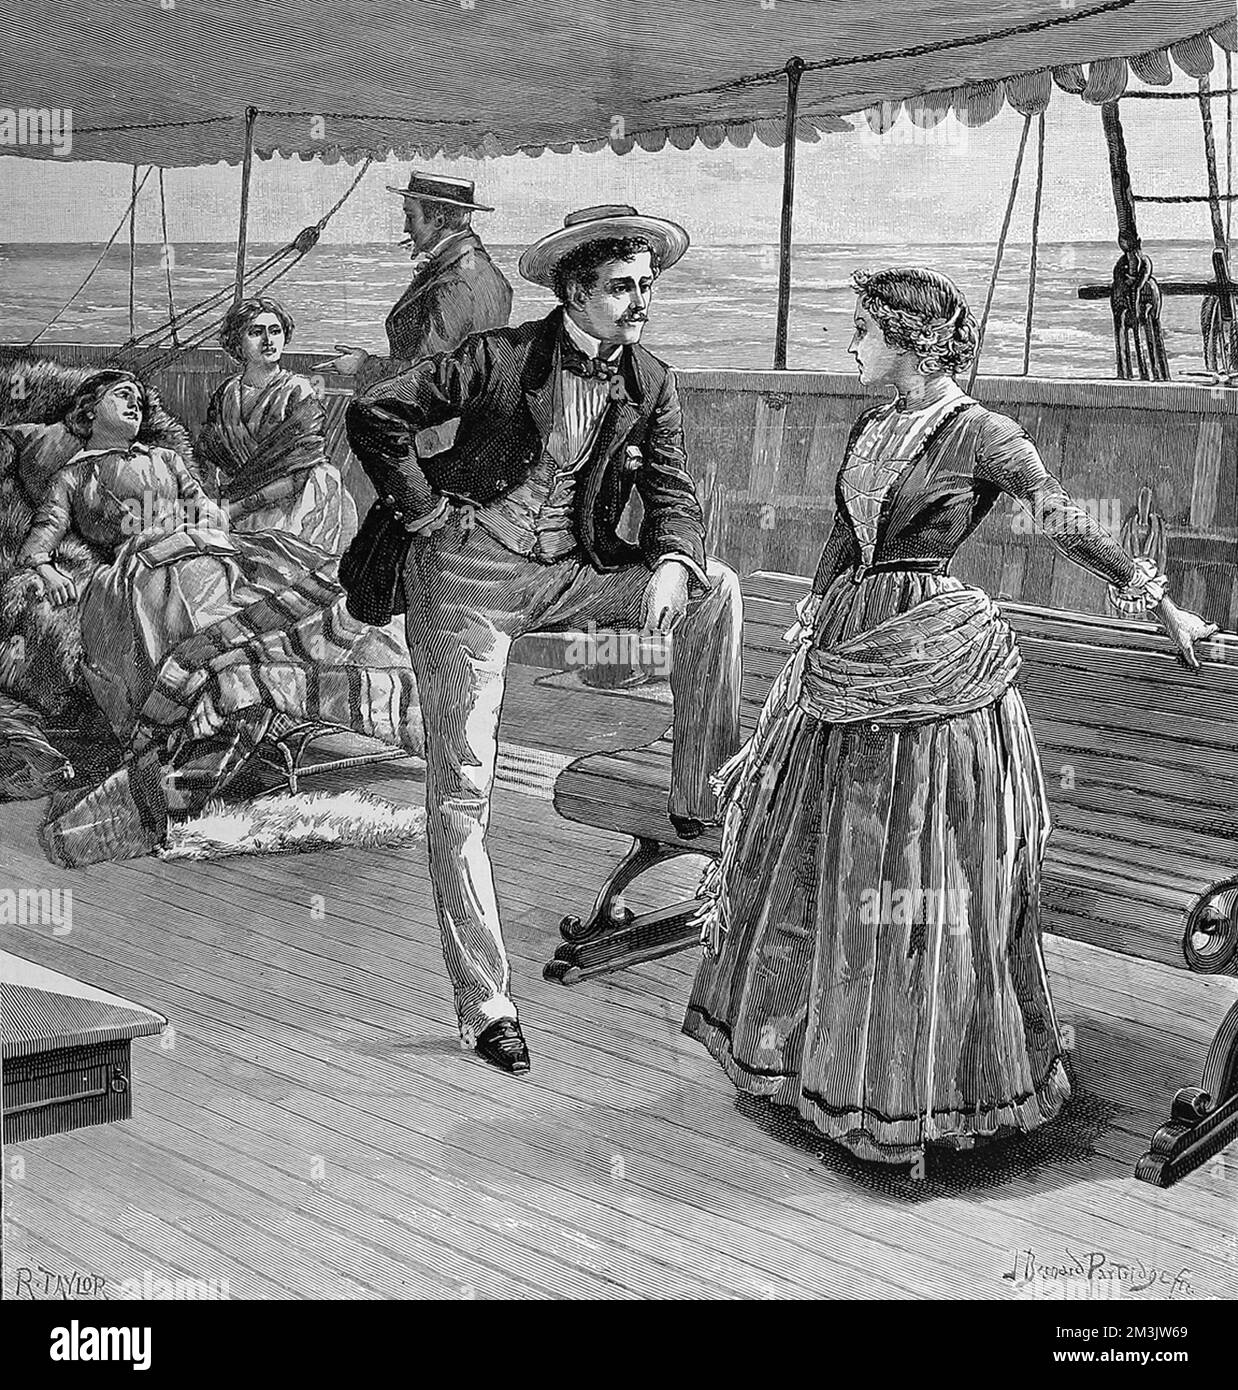 Das junge Mädchen erhob sich empört. Das ist wirklich zu beschämend! Wer wagt es, so zu reden?'', zeigt viktorianische Passagiere auf dem Deck eines Schiffes. Datum: 1887 Stockfoto